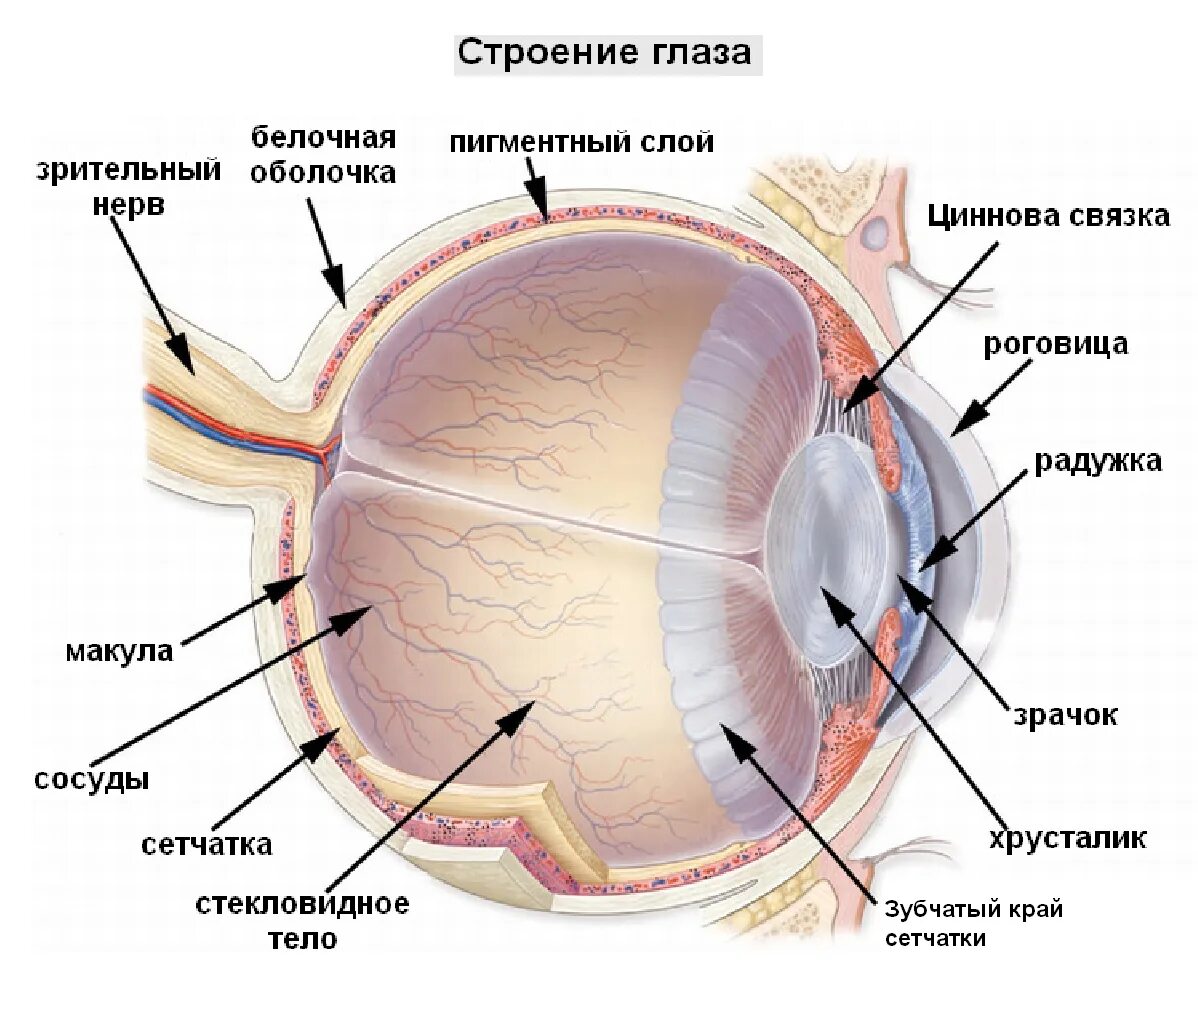 Роговица зрительная зона коры мозга стекловидное тело. Сетчатка оболочка глаза. Строение глаза послойно. Строение глазного яблока и сетчатки. Структура глазного яблока схема.